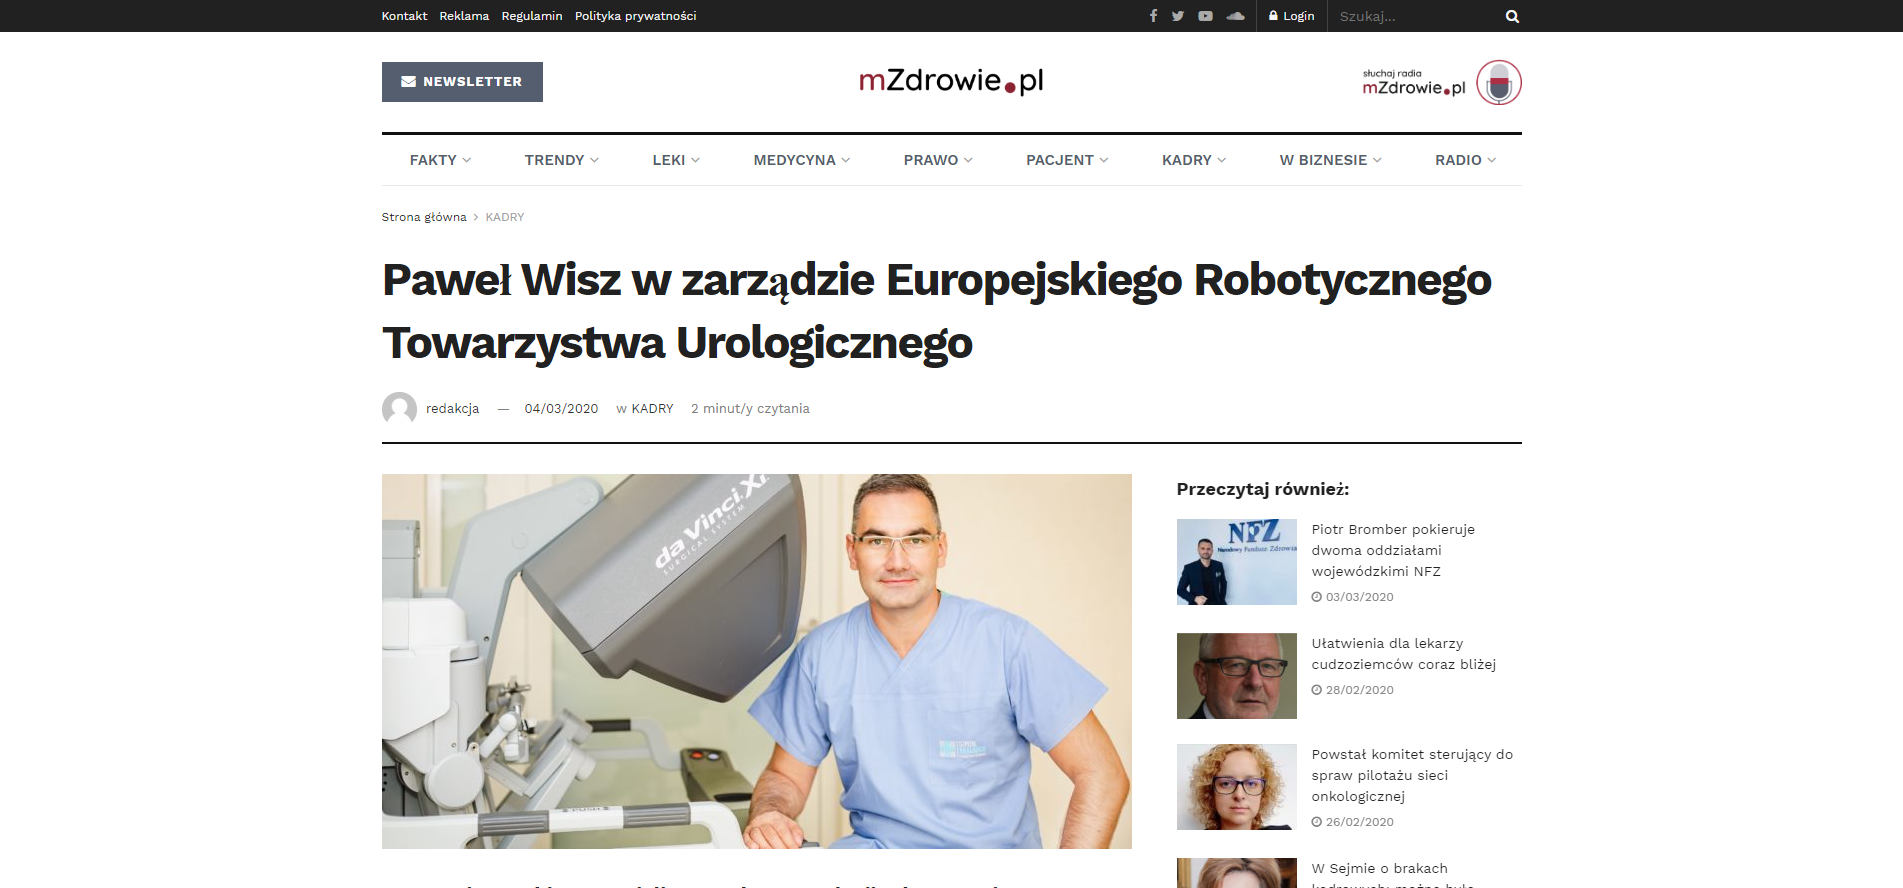 Paweł Wisz w zarządzie Europejskiego Robotycznego Towarzystwa Urologicznego